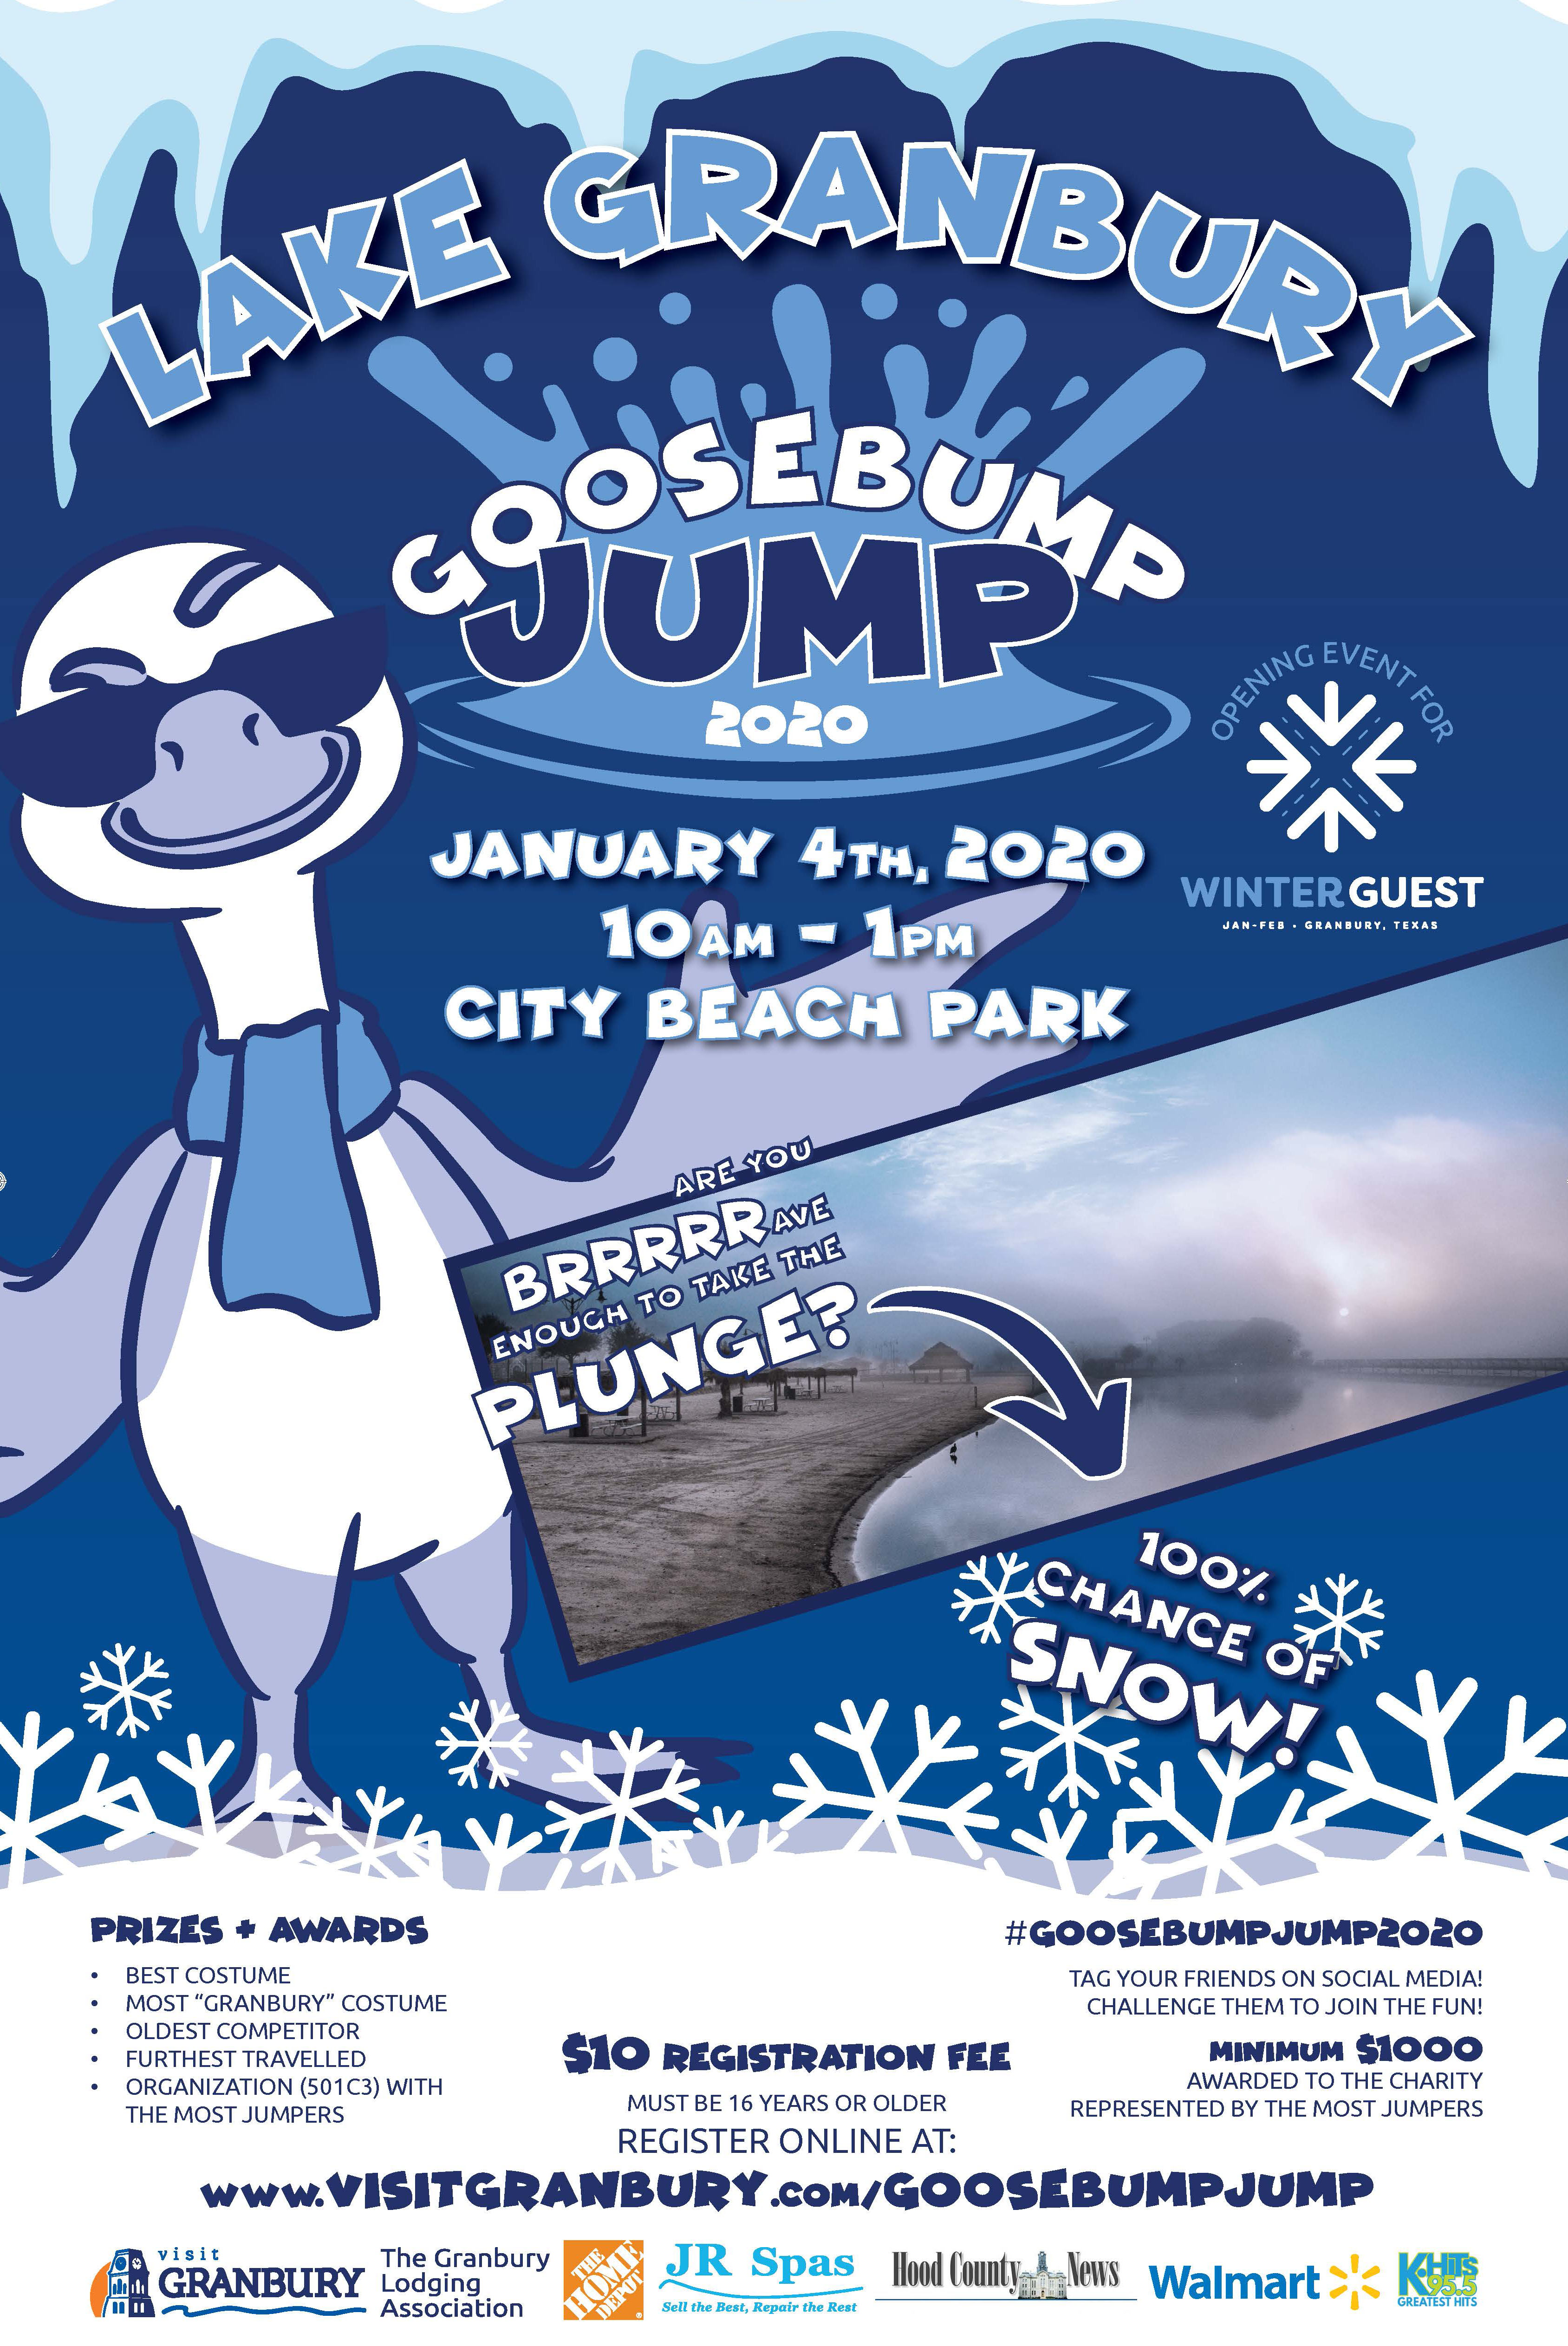 Lake Granbury Goosebump Jump 2020. January 4, 2020 10am - 1pm. City Beach Park.